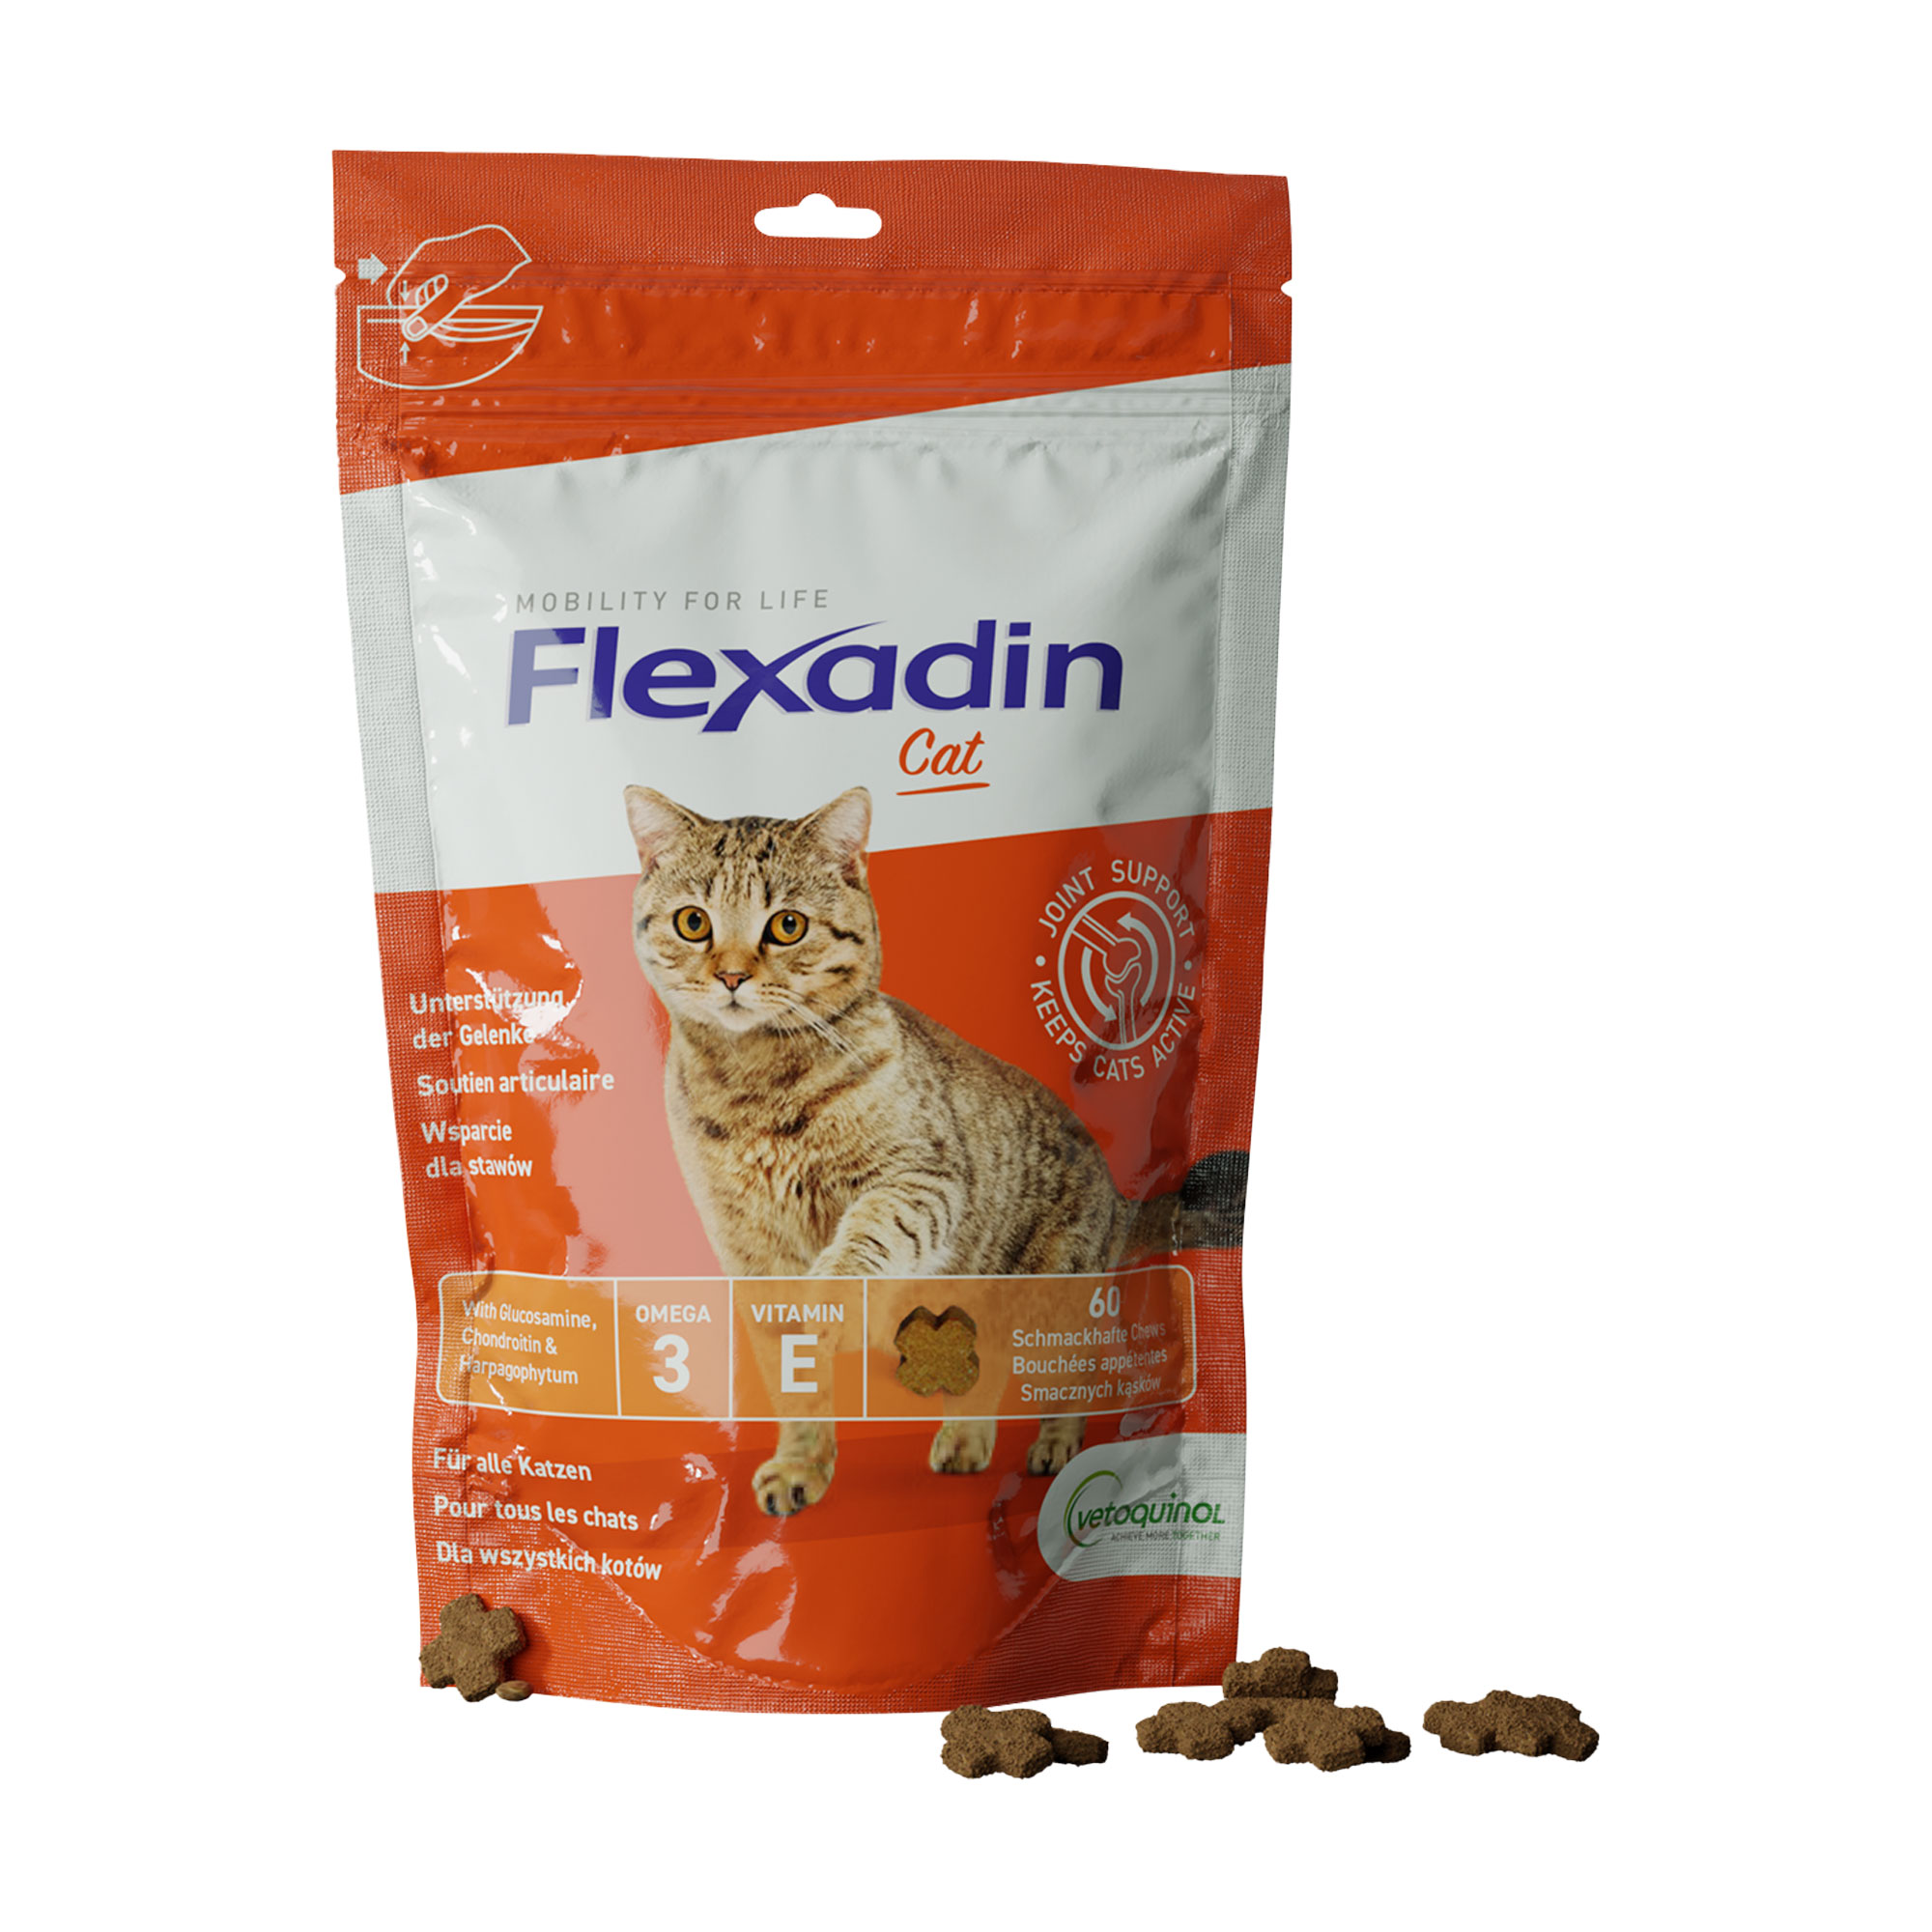 Ergänzungsfutter für Katzen. Schmackhafte Kauleckerli (Chews) mit Glucosamin, Chondroitin und Omega-3.